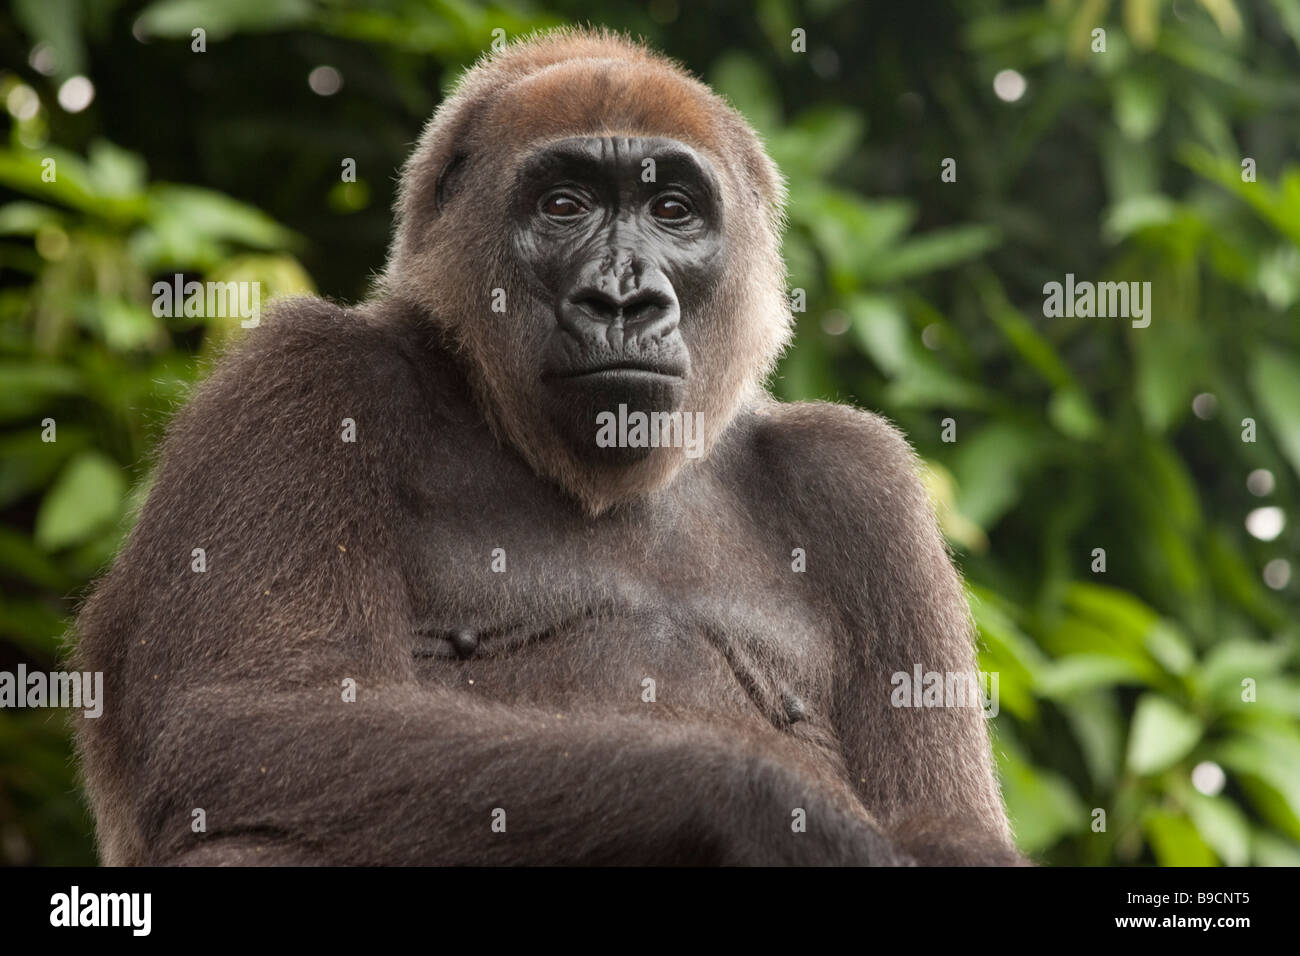 Gorila de Cross River, rara imagen, Camerún y Nigeria Foto de stock